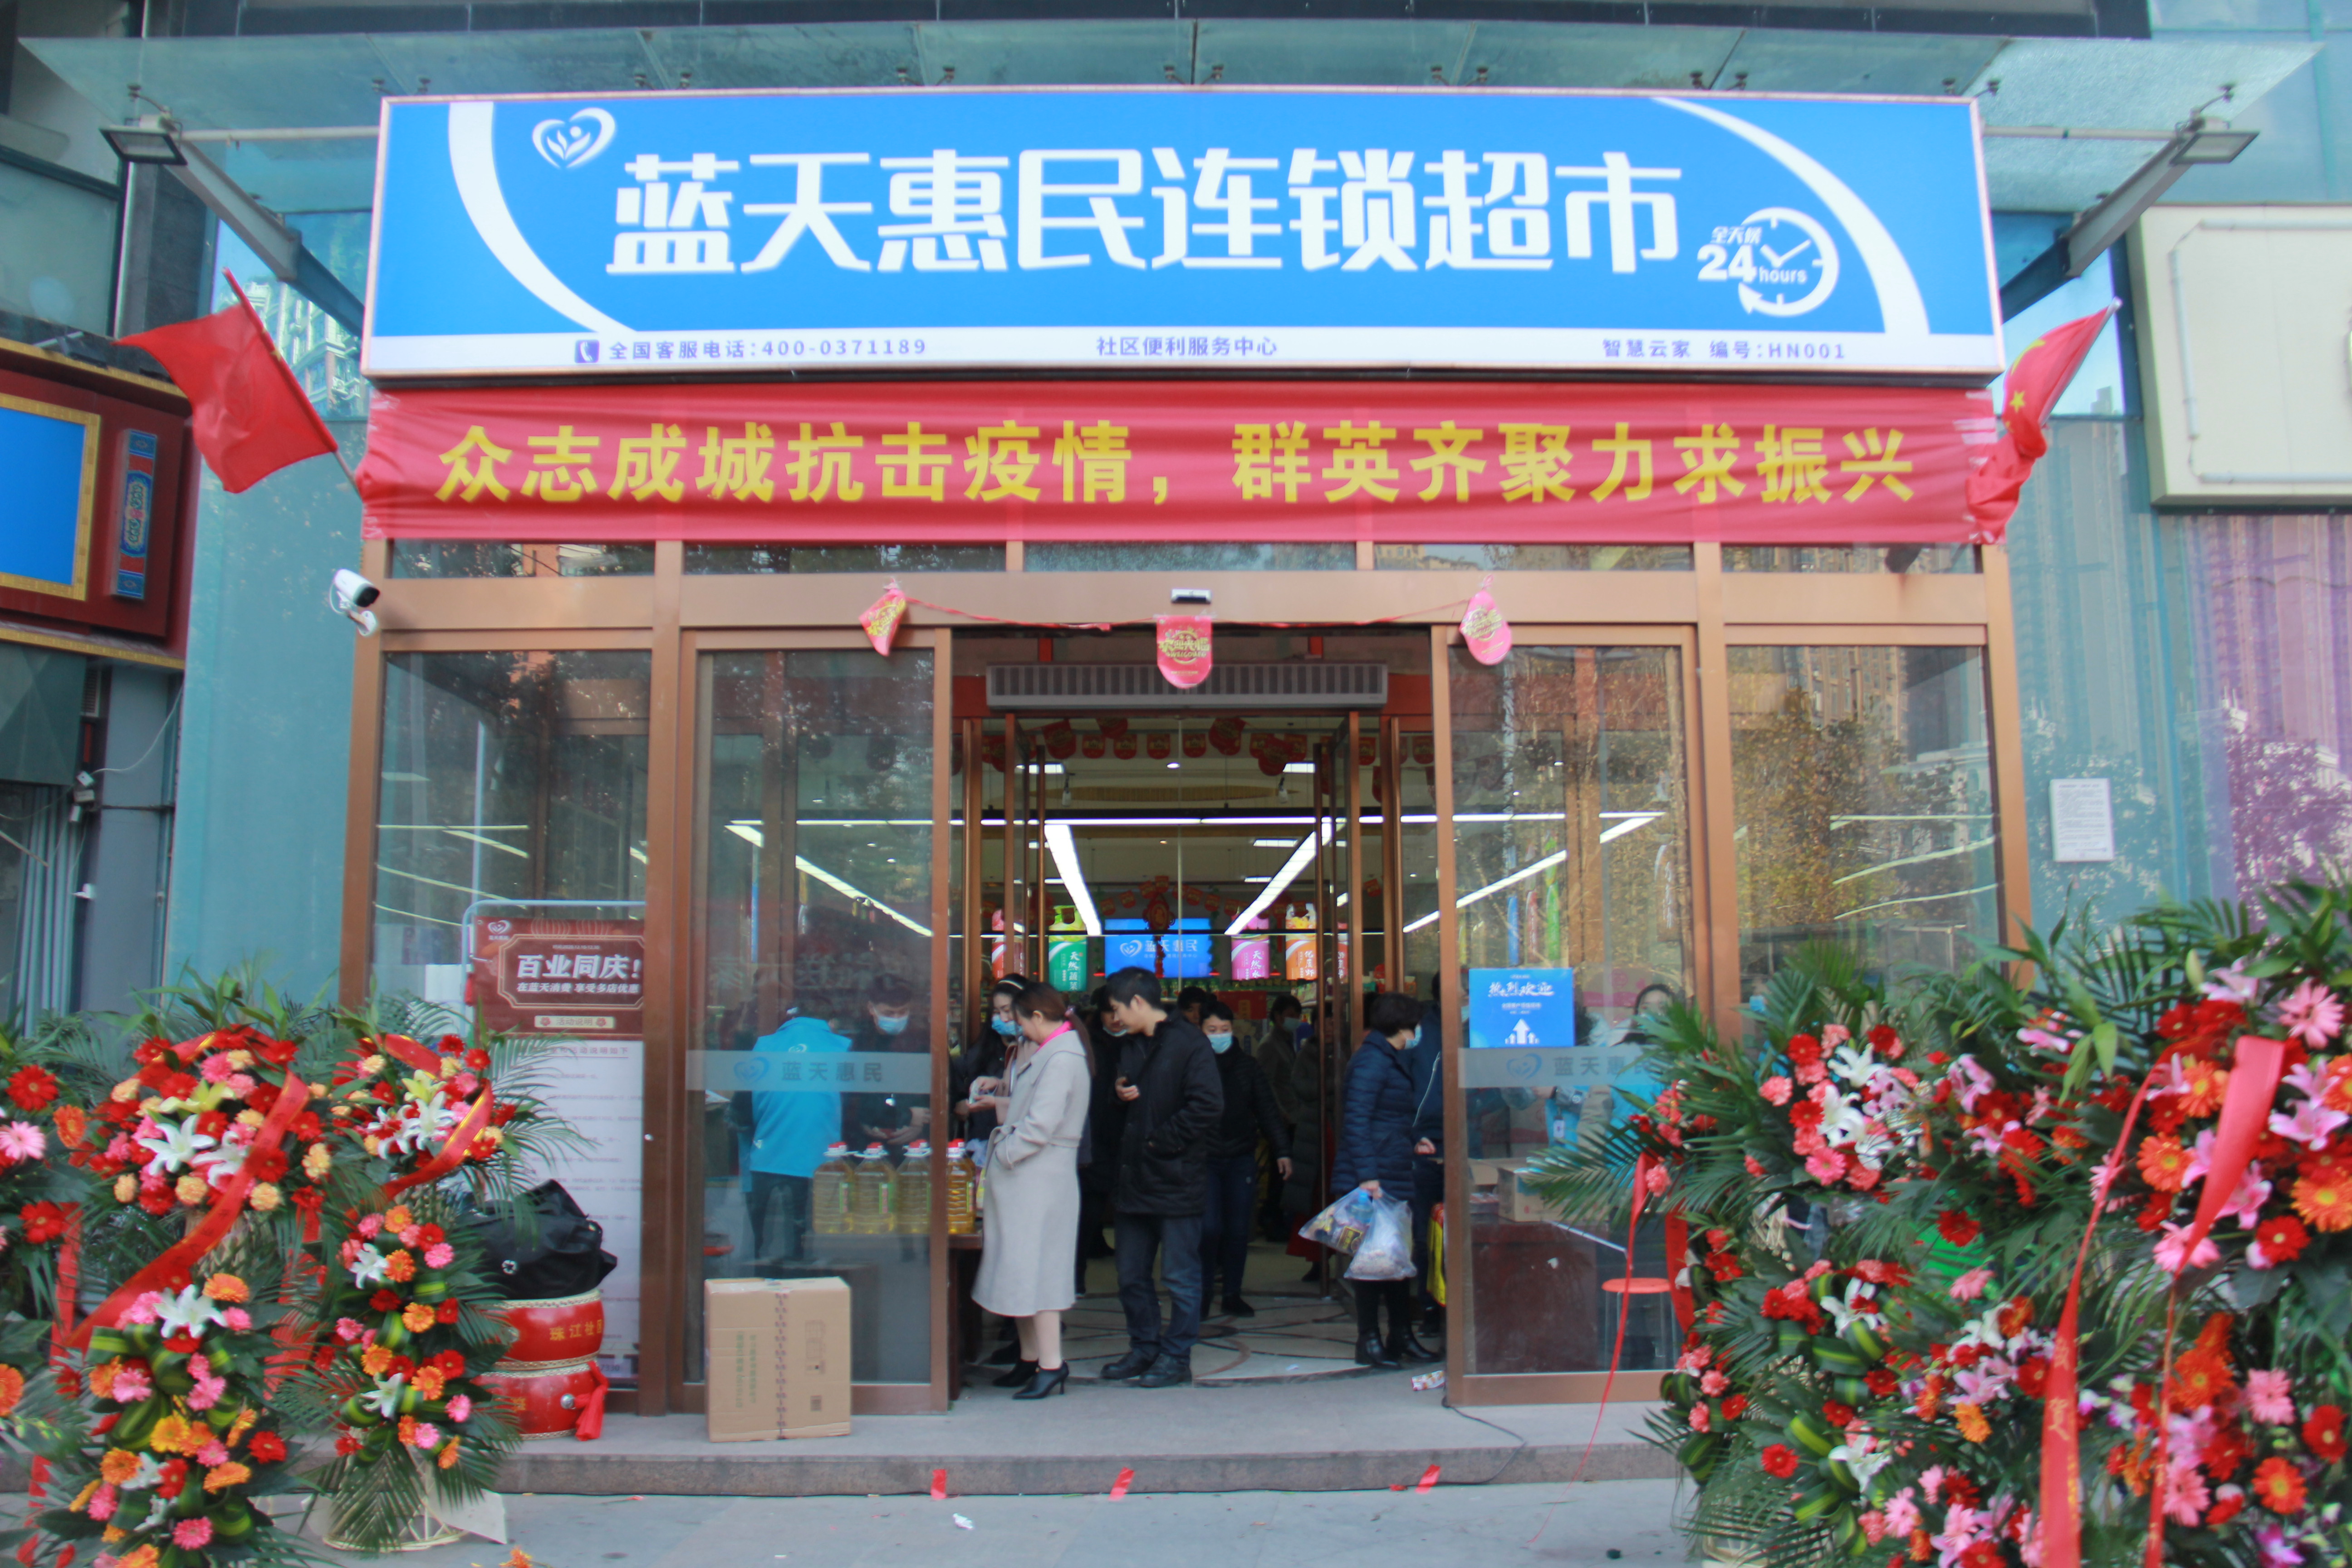 蓝天惠民连锁超市在郑州举办盛大开业庆典活动